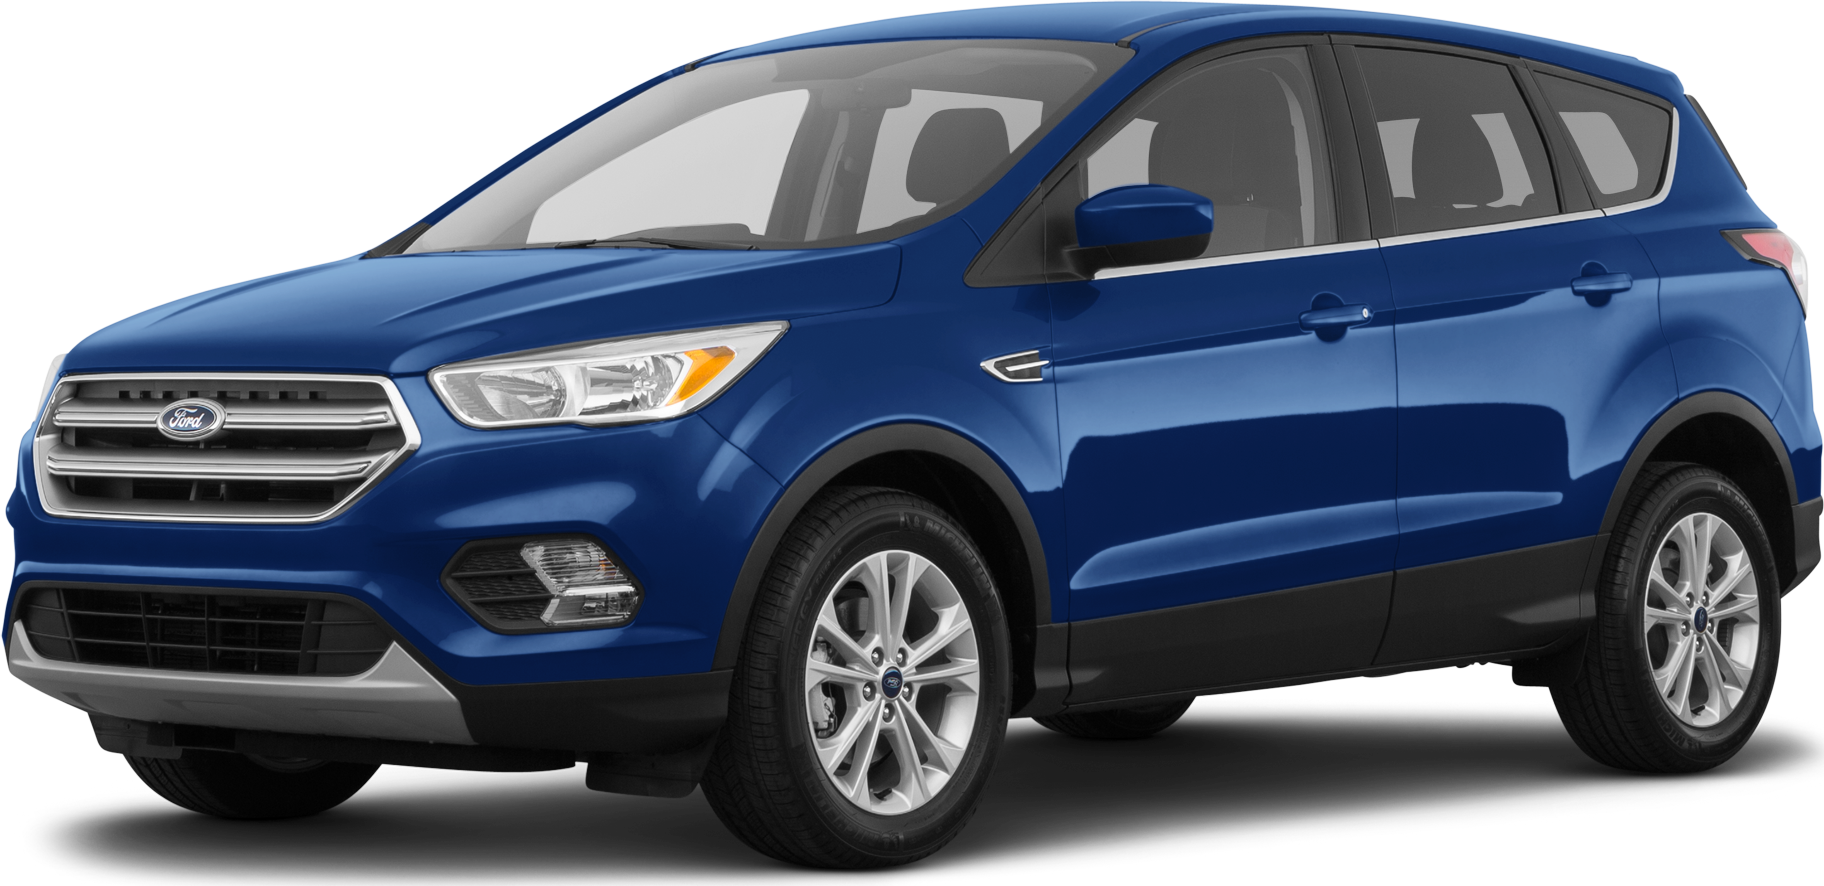 Review of the 2018 Ford Escape Titanium, Car Reviews